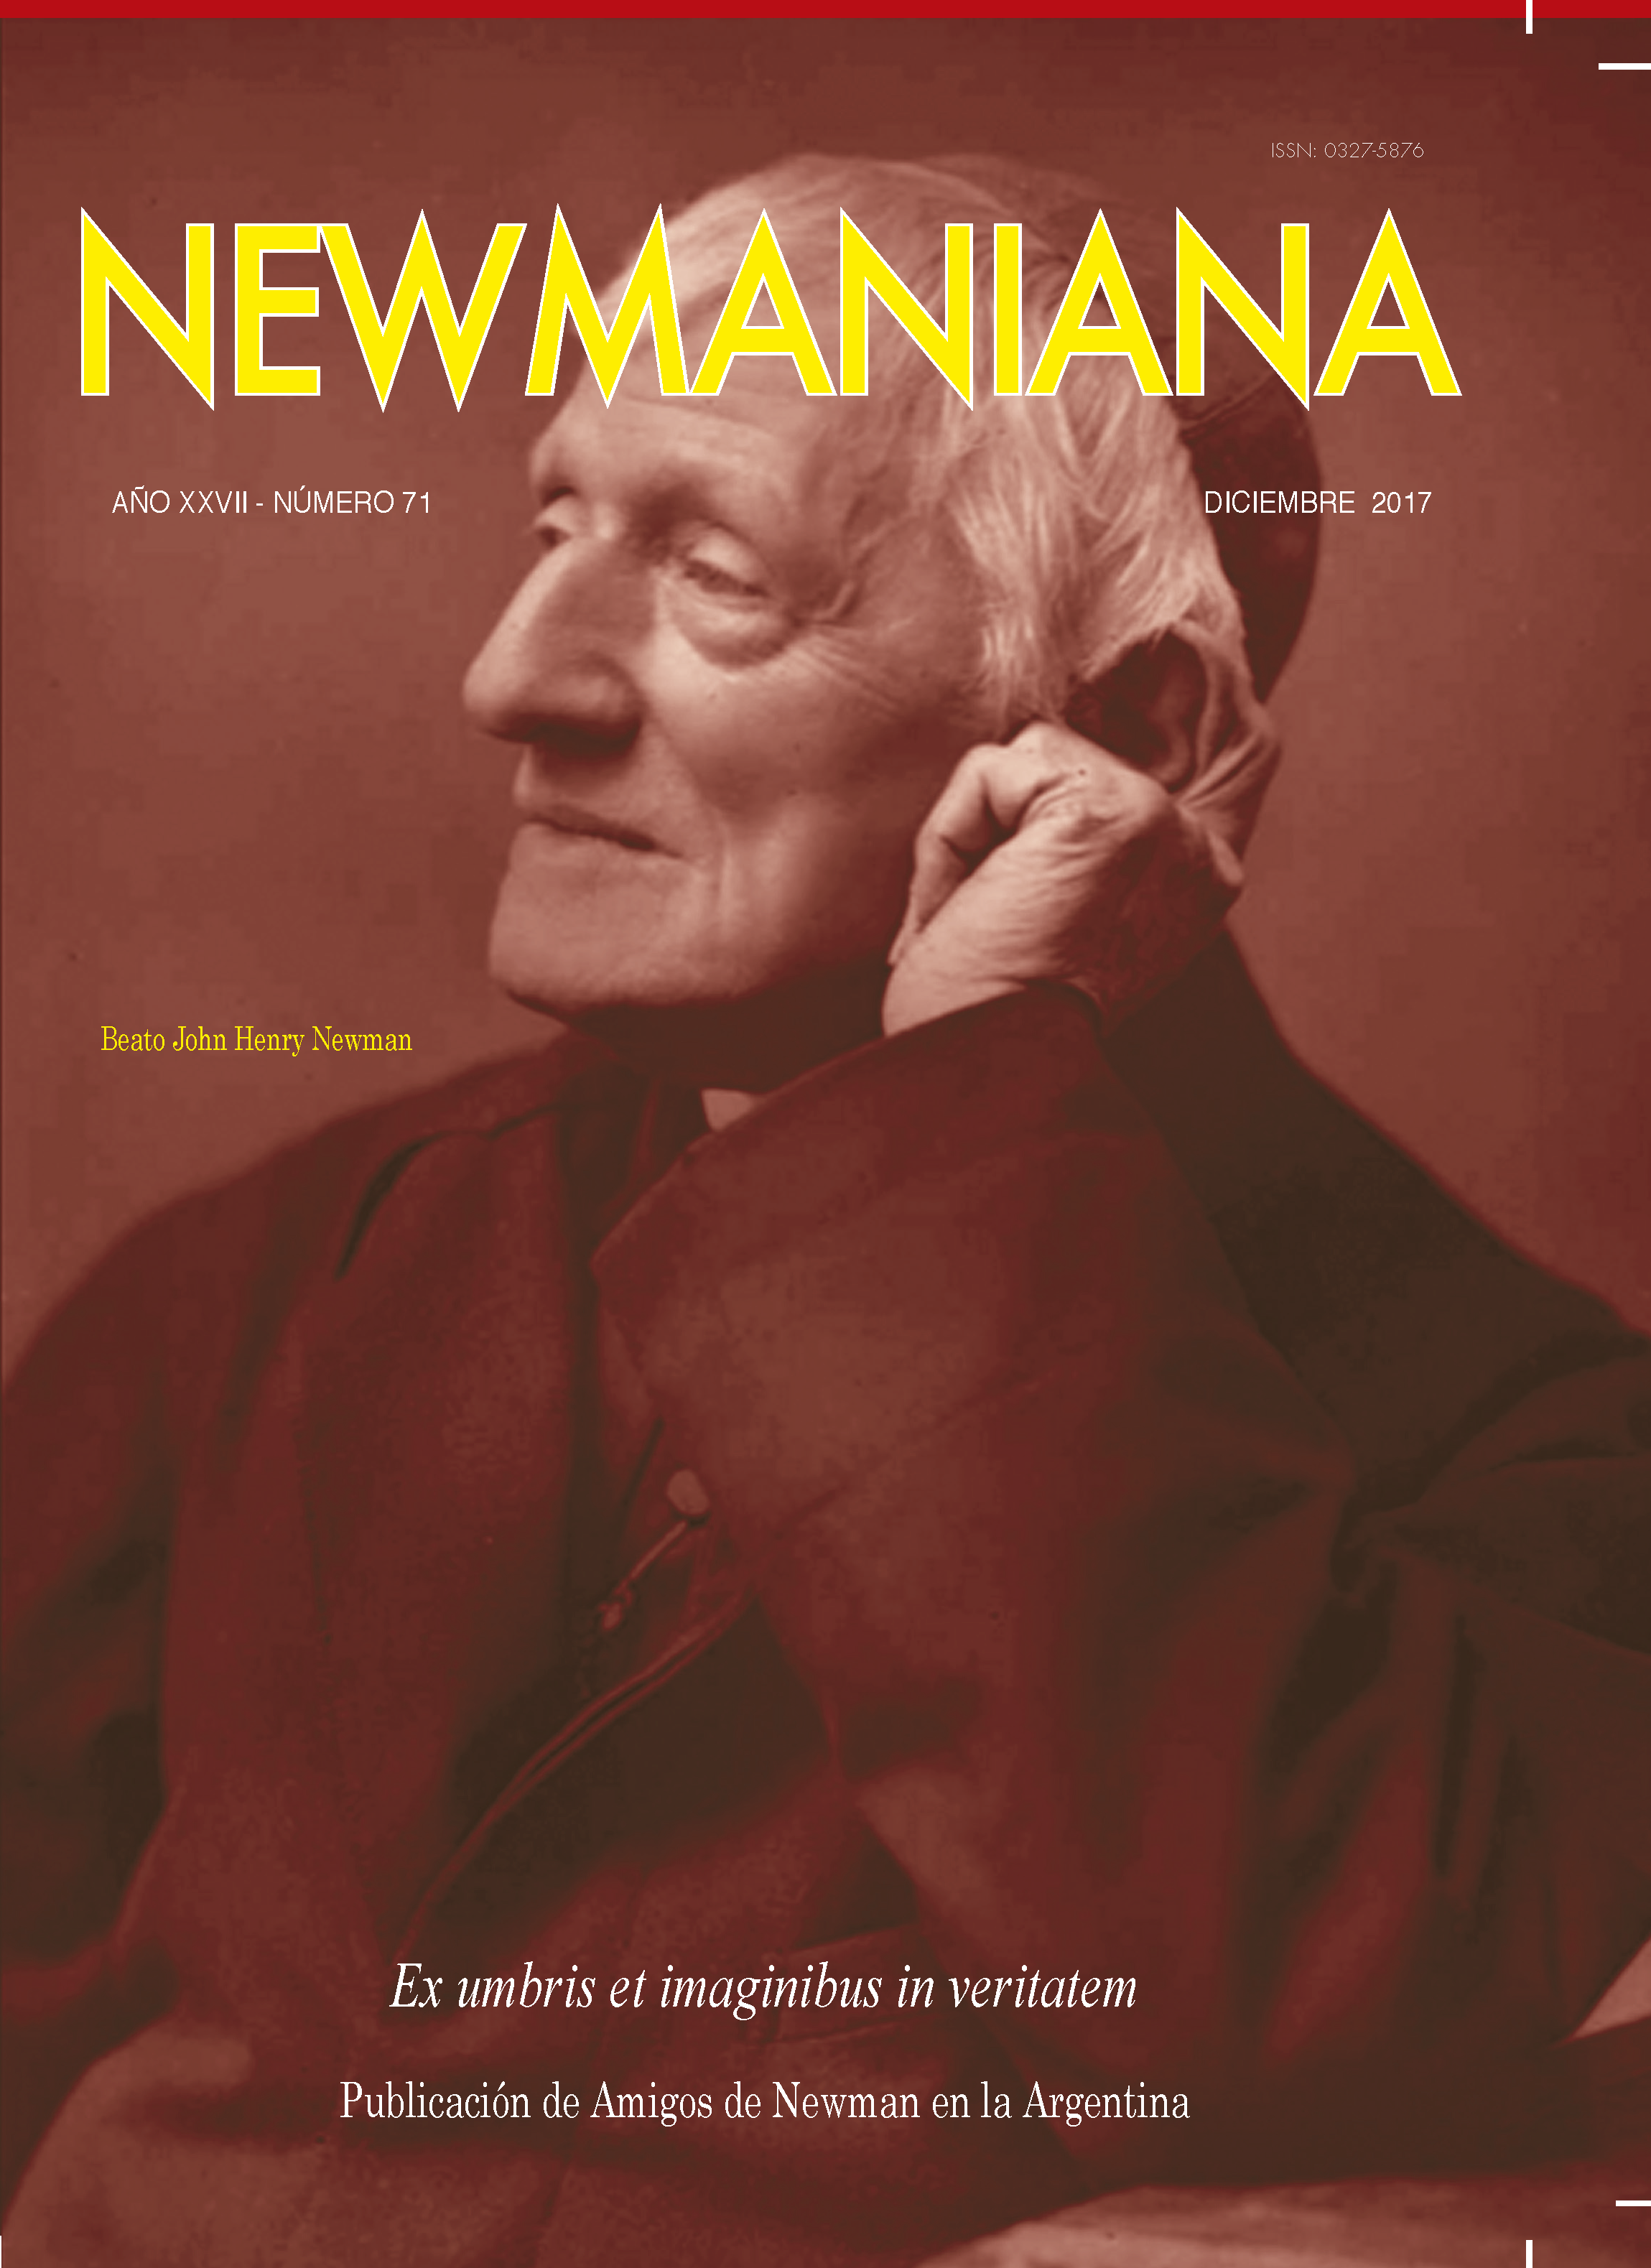 Revista Newmaniana N°71 – Diciembre 17